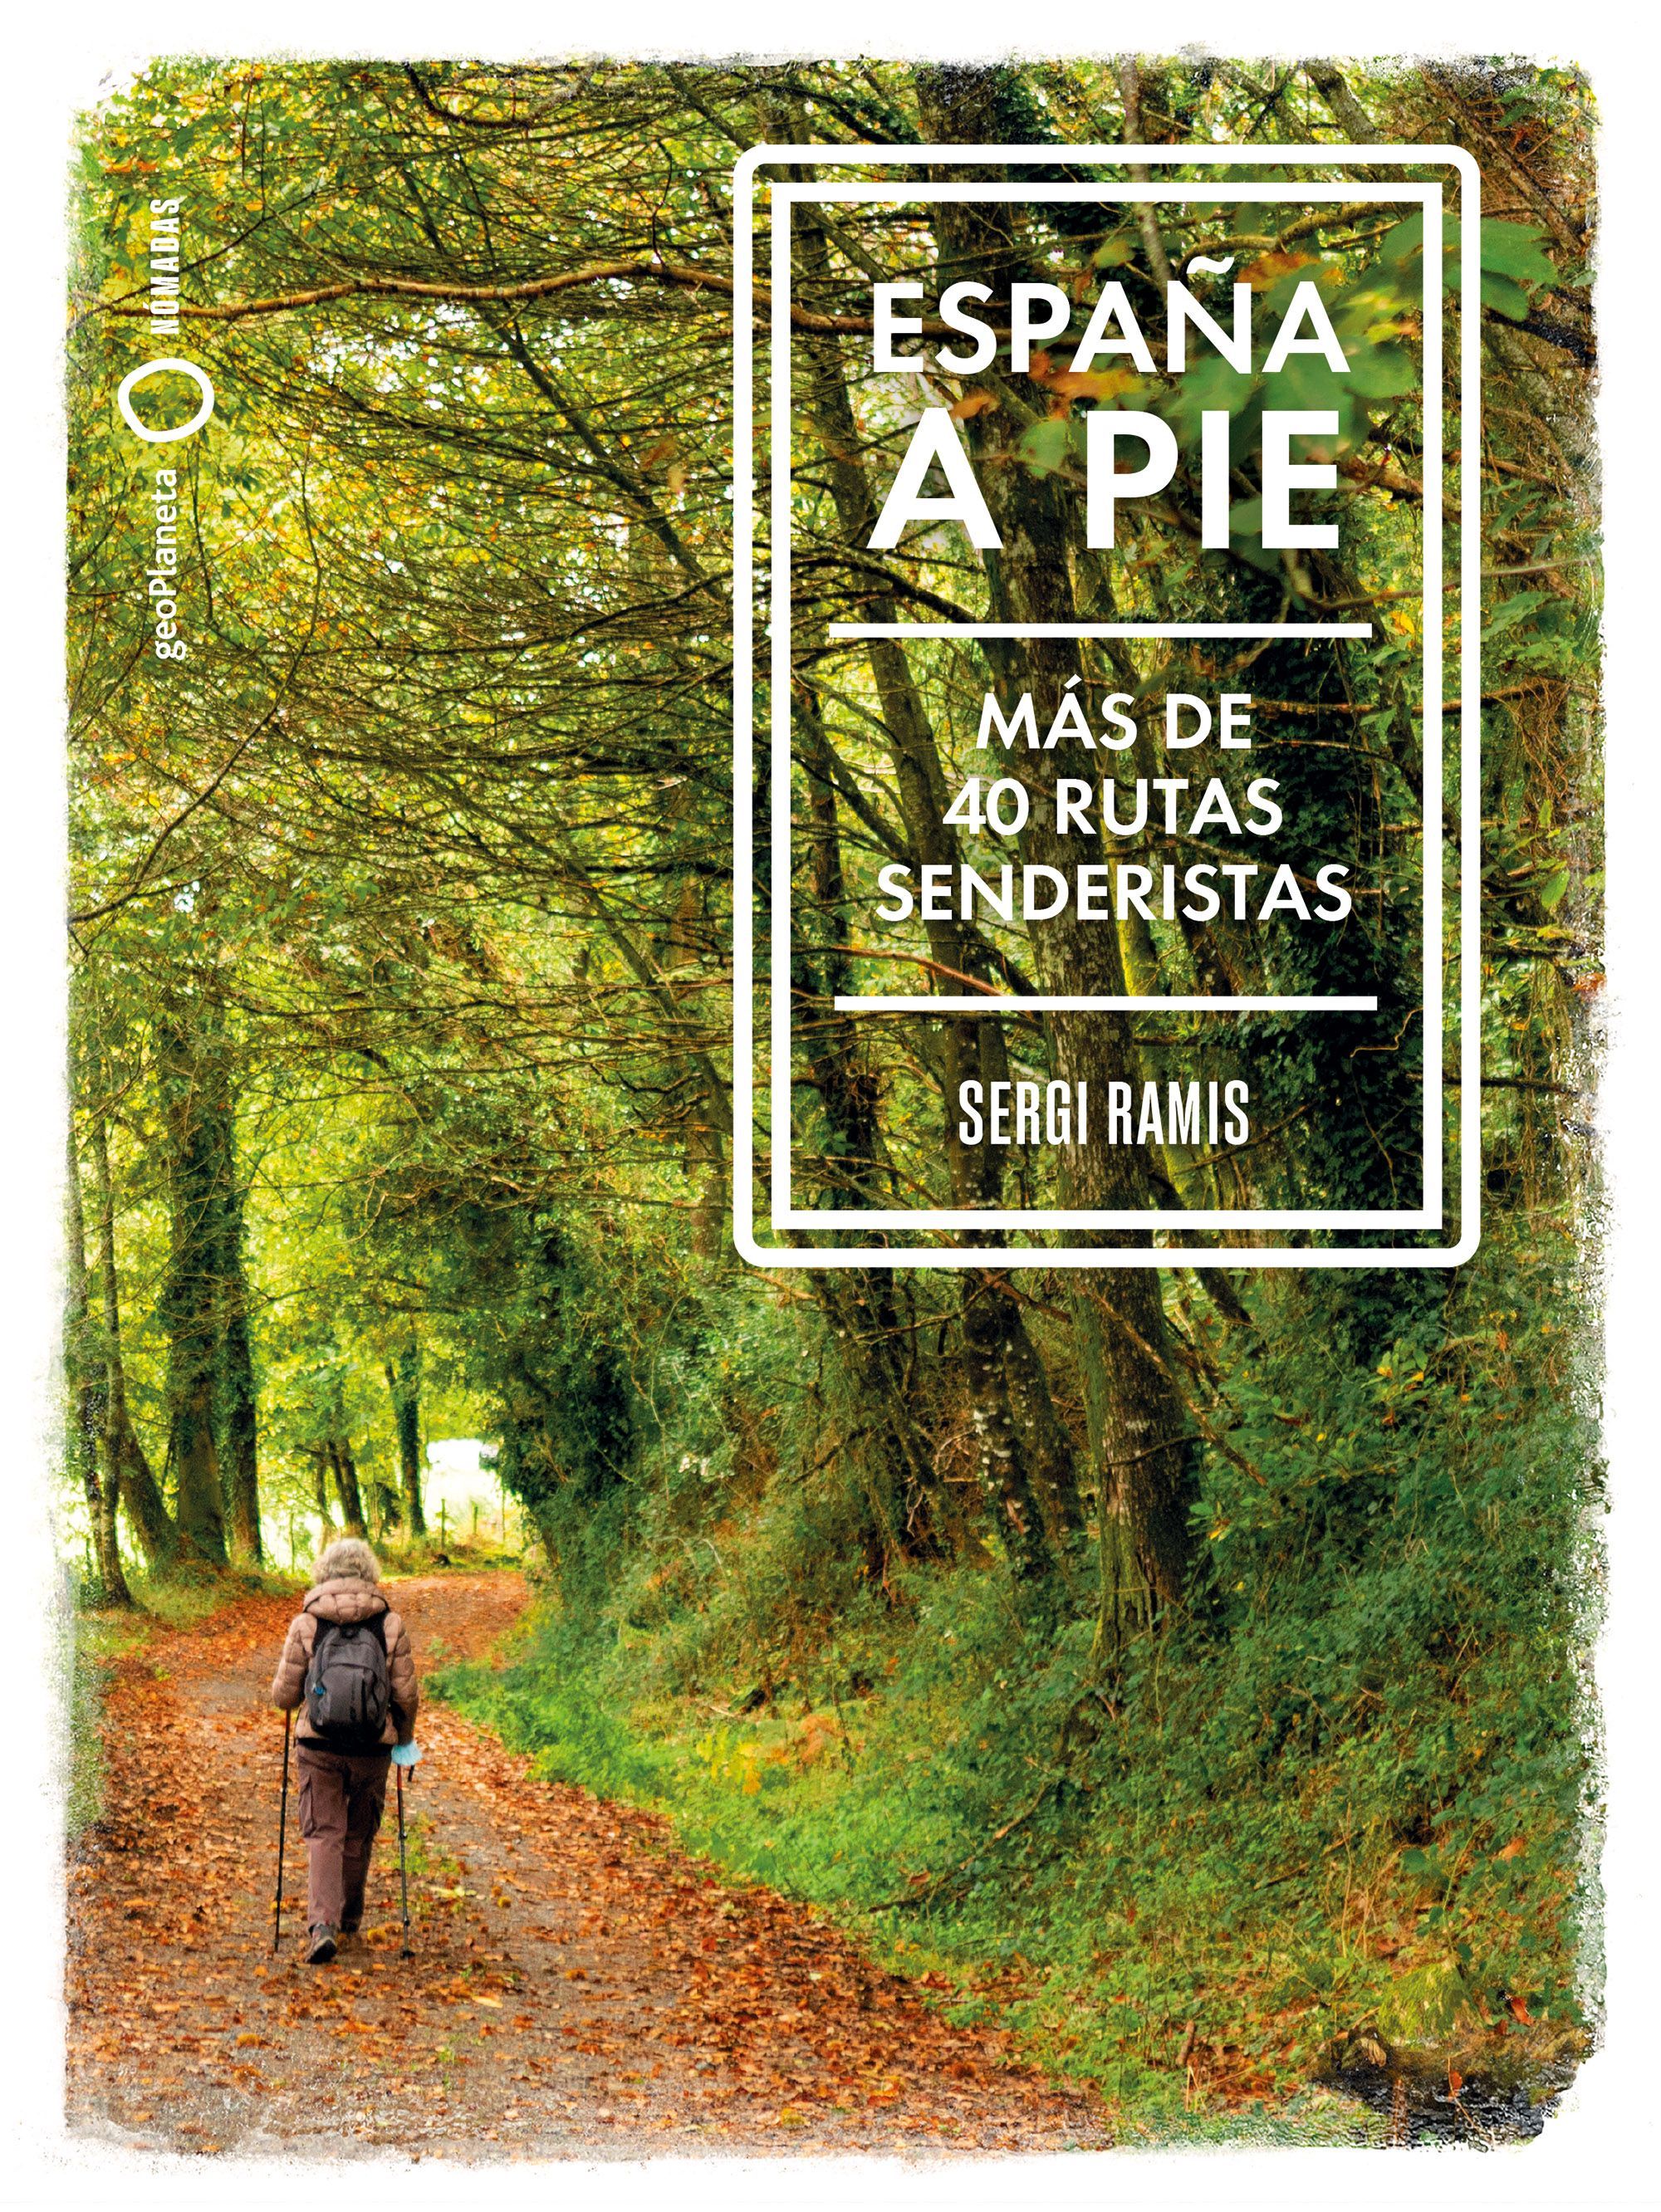 Portada del libro 'España a pie. Más de 40 rutas senderistas'